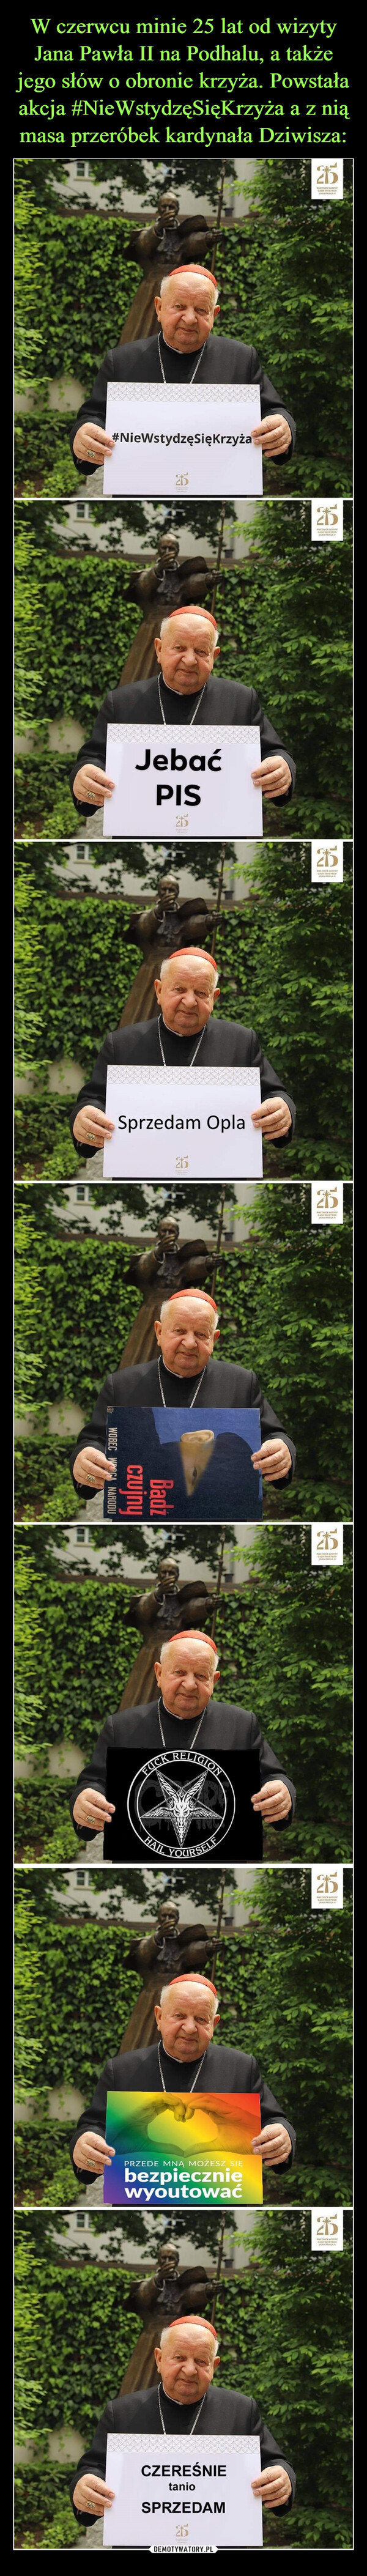 W czerwcu minie 25 lat od wizyty Jana Pawła II na Podhalu, a także jego słów o obronie krzyża. Powstała akcja #NieWstydzęSięKrzyża a z nią masa przeróbek kardynała Dziwisza: